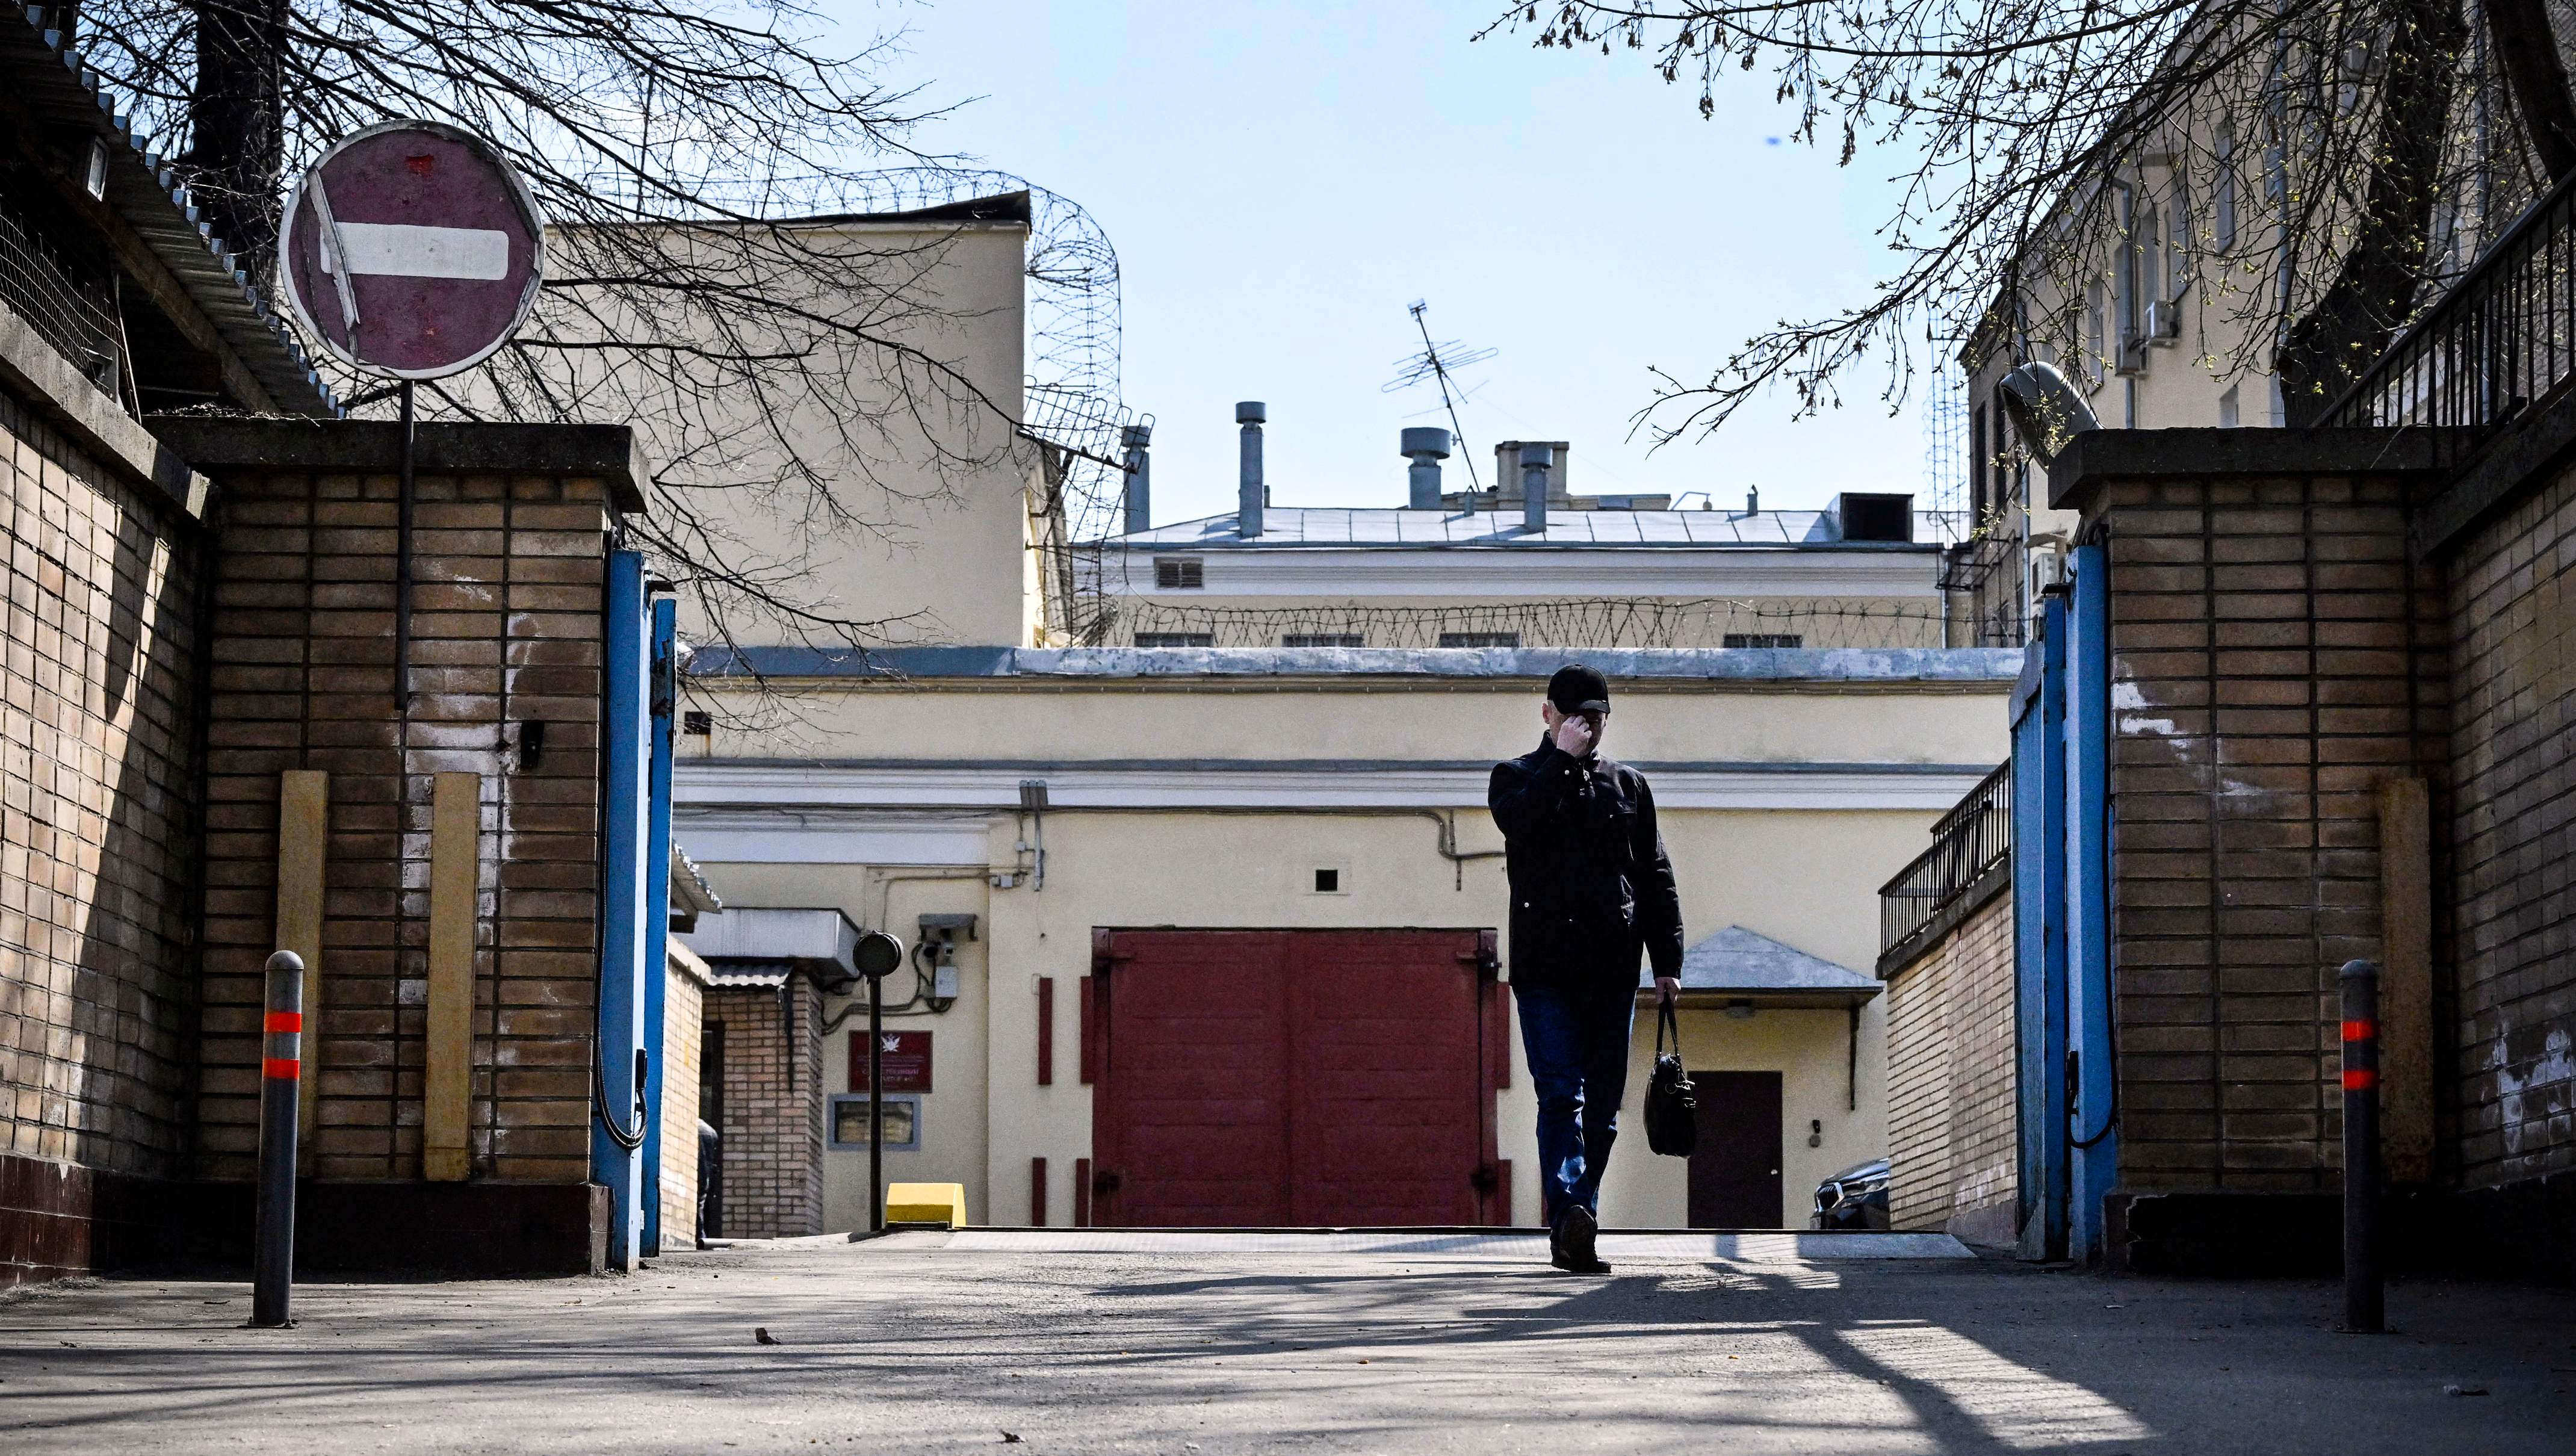 Afuera de la entrada de la prisión de Lefortovo, donde Evan estuvo detenido, conocida por albergar a disidentes políticos